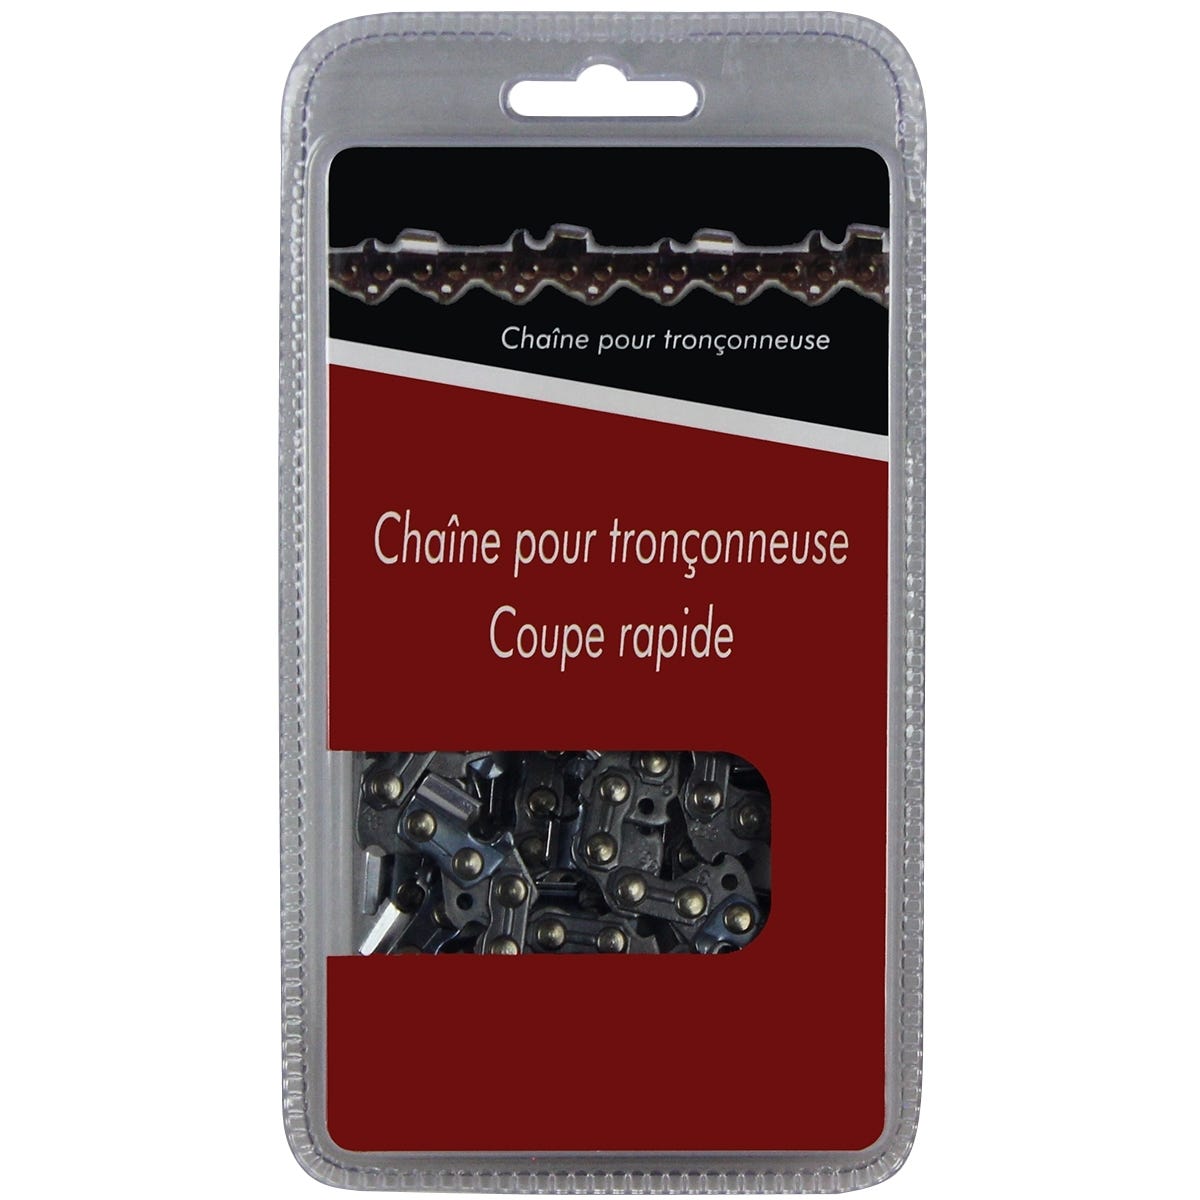 Stihl - Chaine Pour Tronçonneuse Ms170 - Guide 35Cm - 3/8 1.1 X 50 Maillons